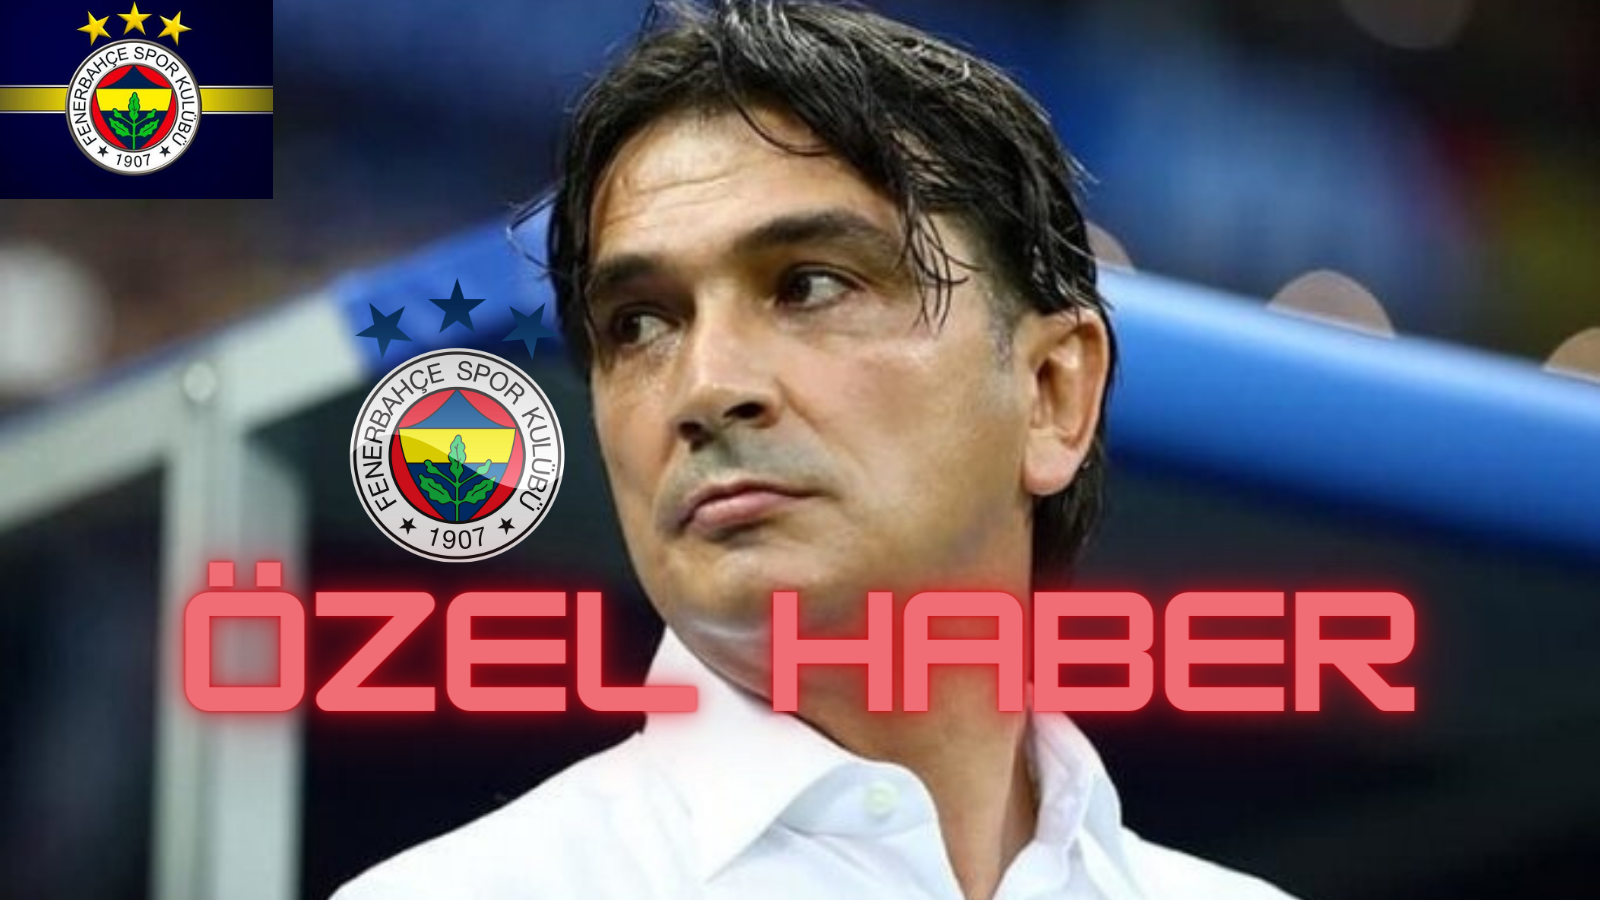 ÖZEL HABER Fenerbahçe yeni teknik direktörünü buldu!